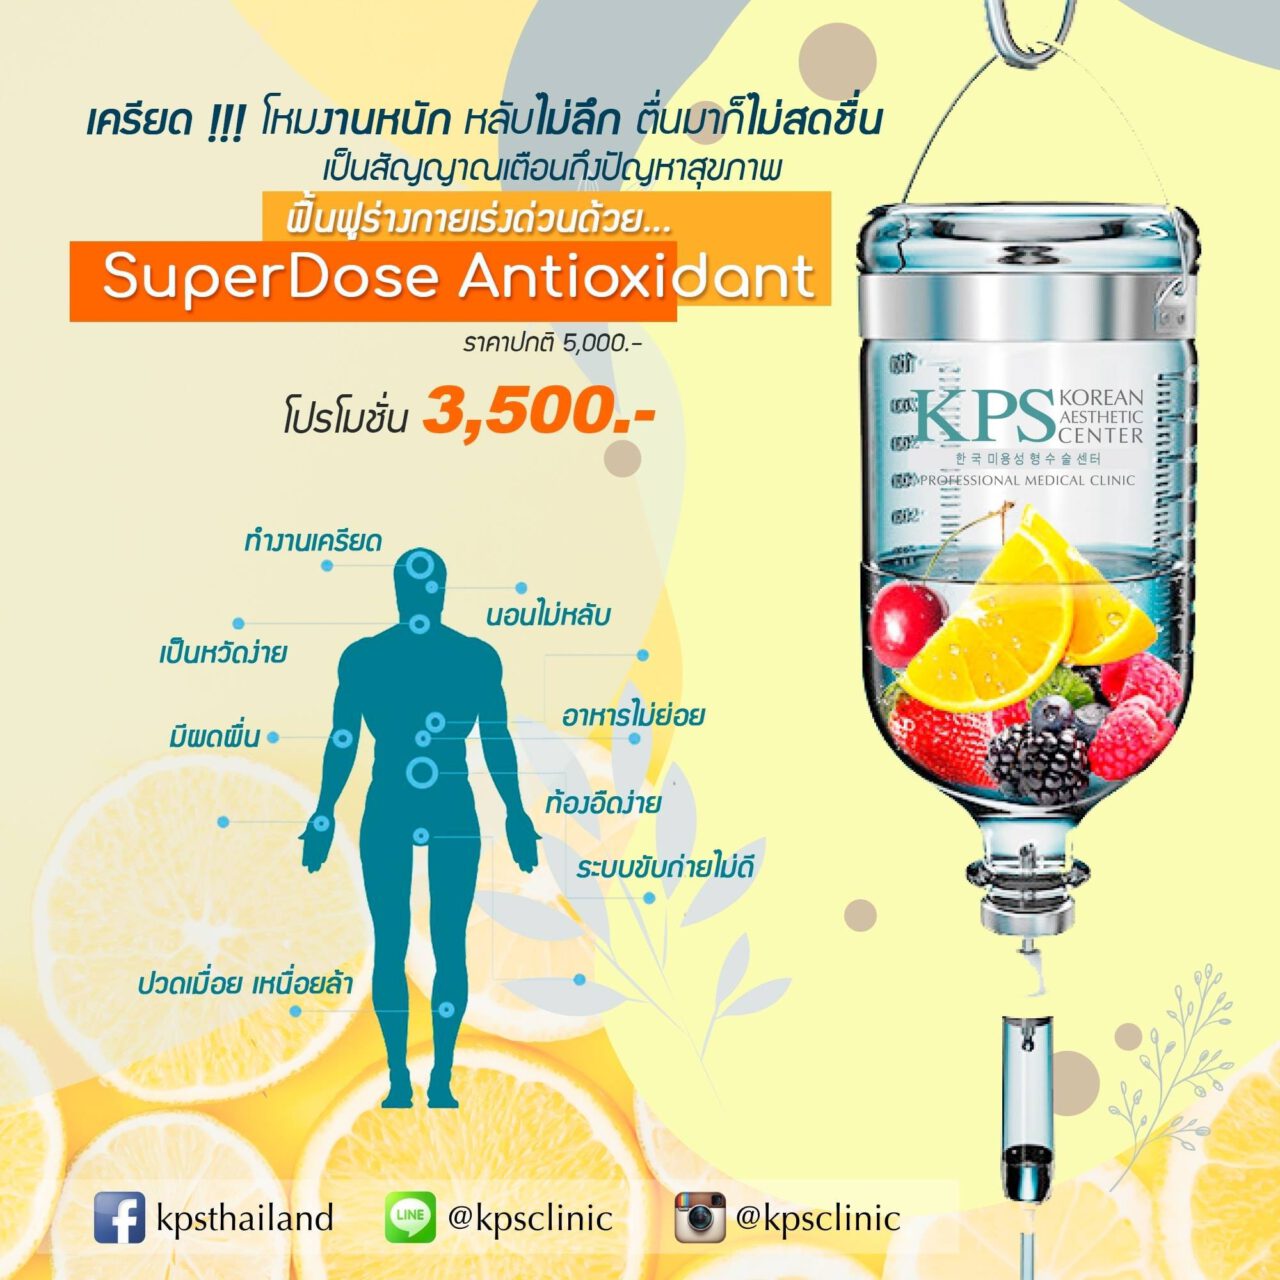 SuperDose Antioxidant